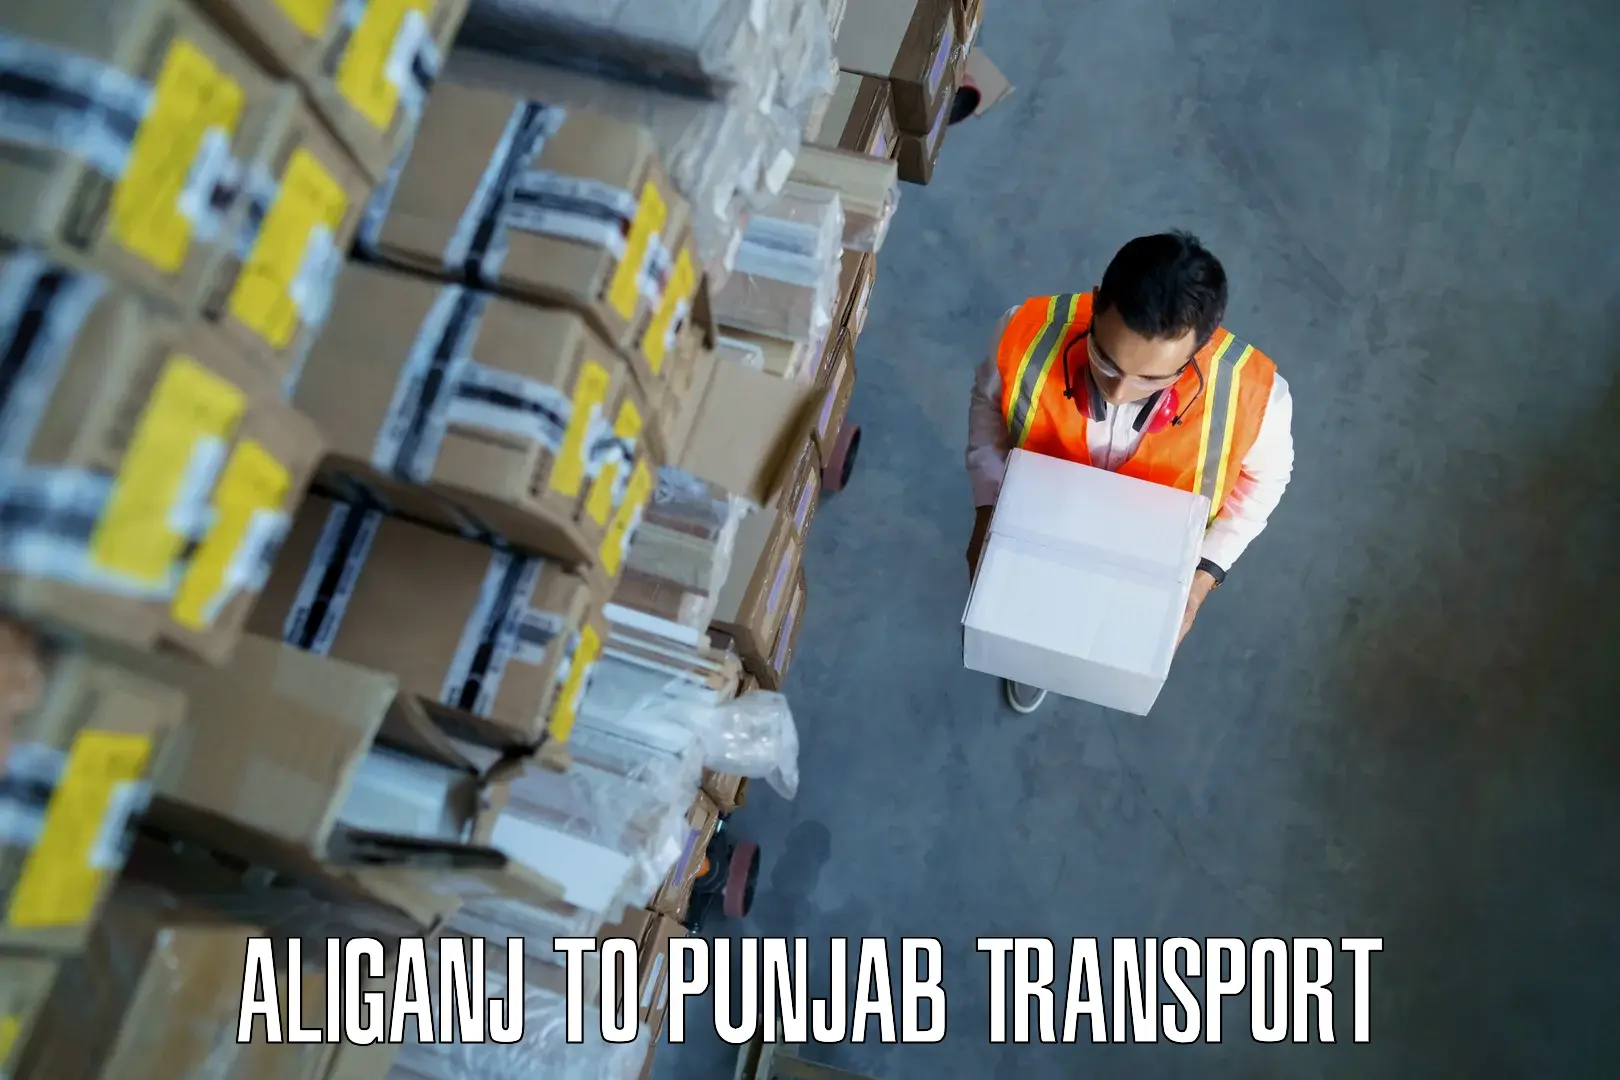 Furniture transport service Aliganj to Sangrur